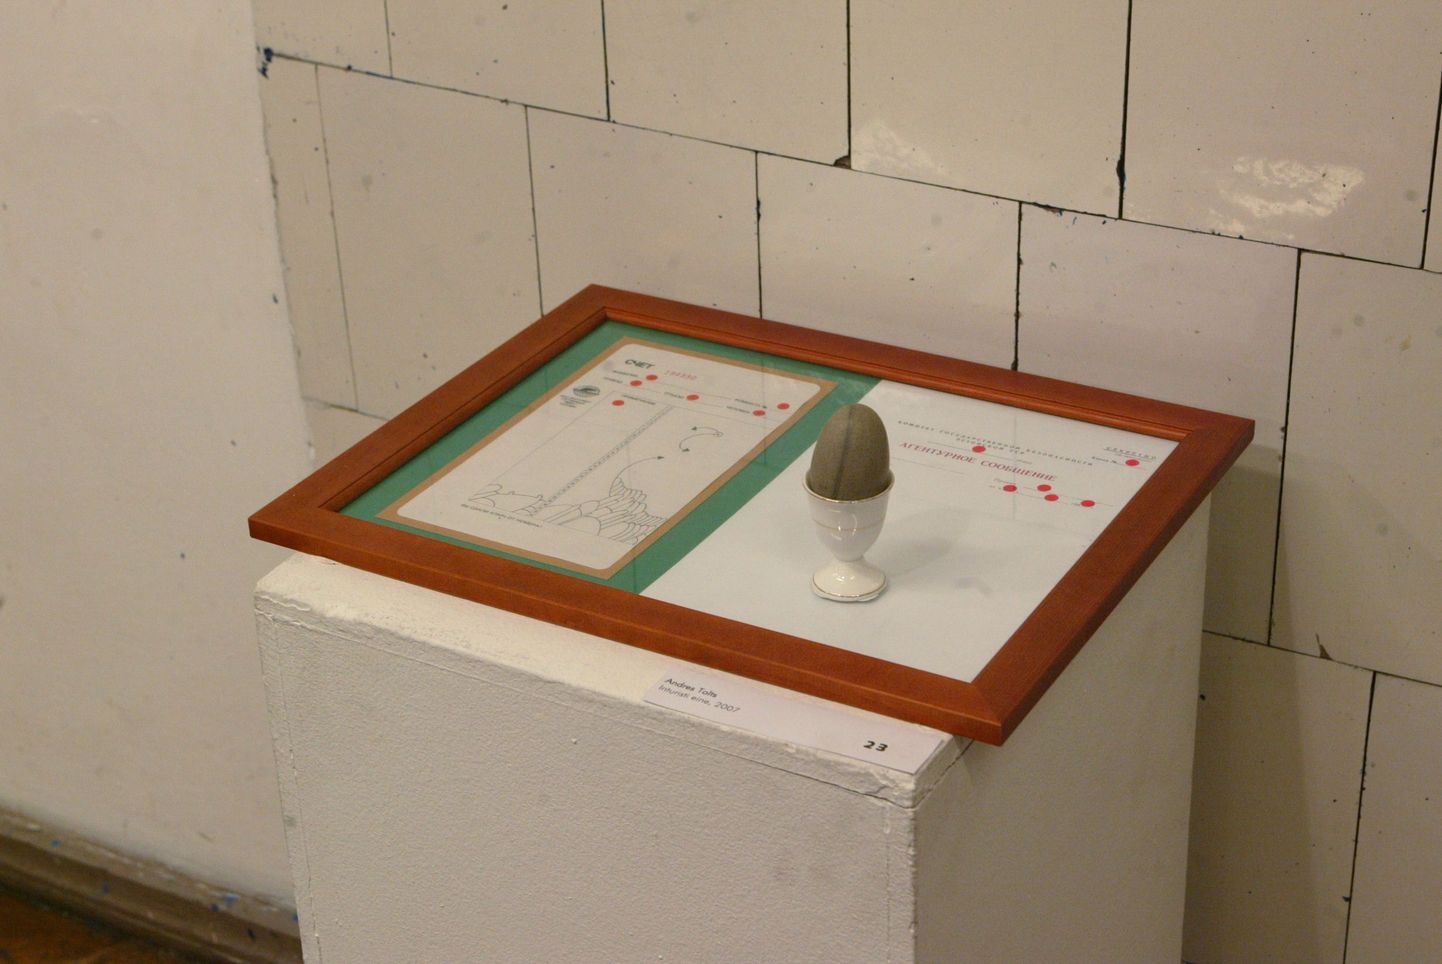 Andres Toltsi intsallatsioon "Inturisti eine" (2007)näituselt "Kontor".